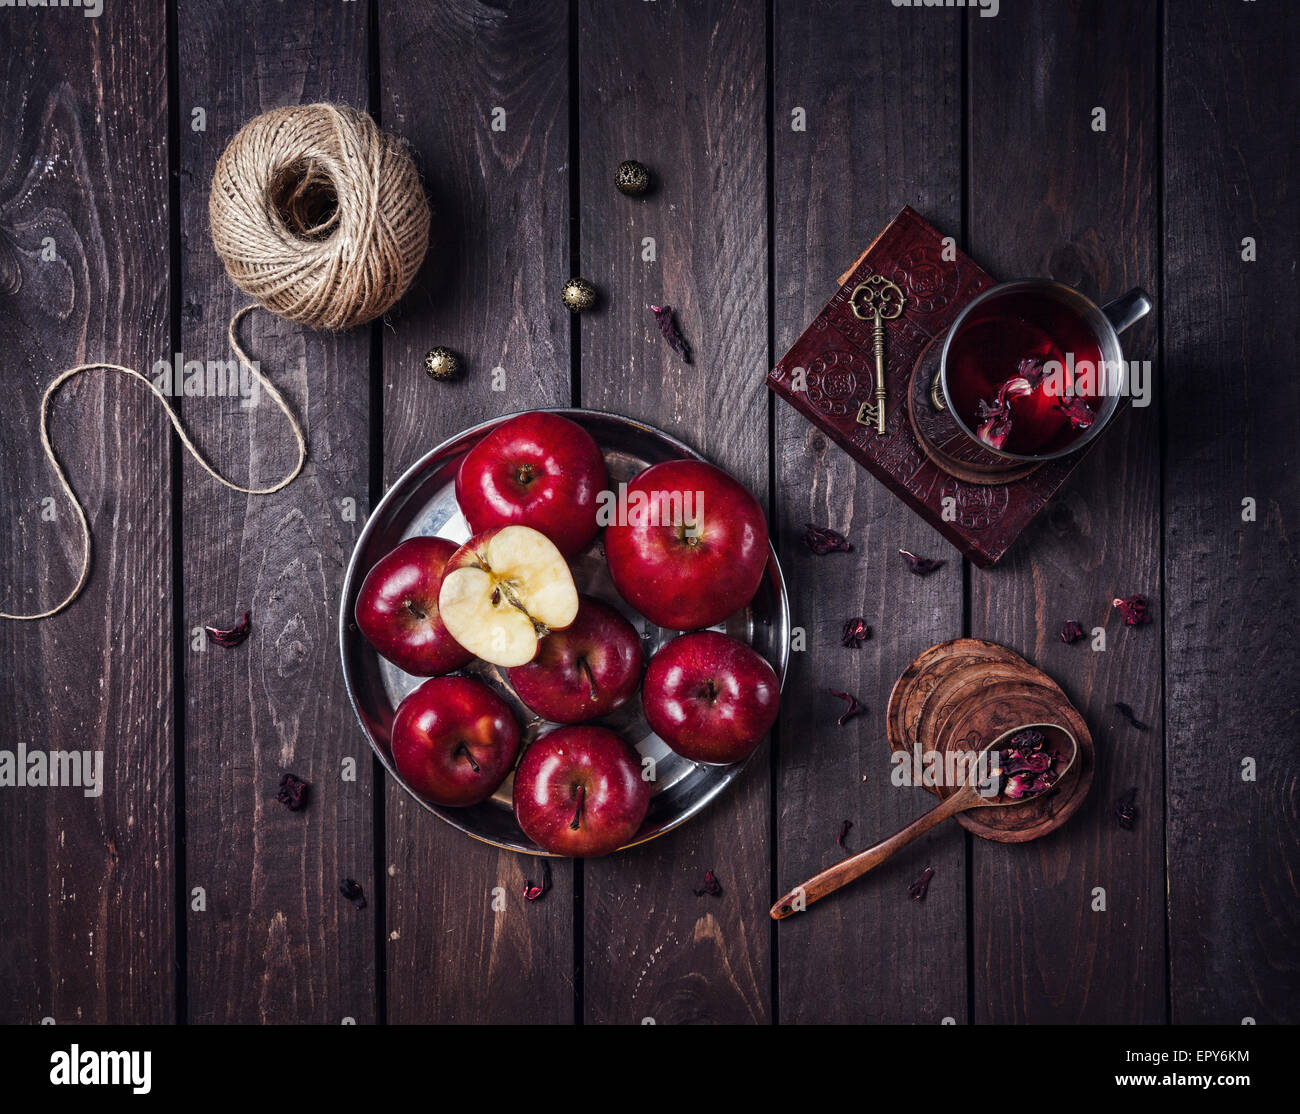 Le mele rosse sulla piastra e la tazza con il tè di ibisco sul vecchio libro al buio sullo sfondo di legno Foto Stock